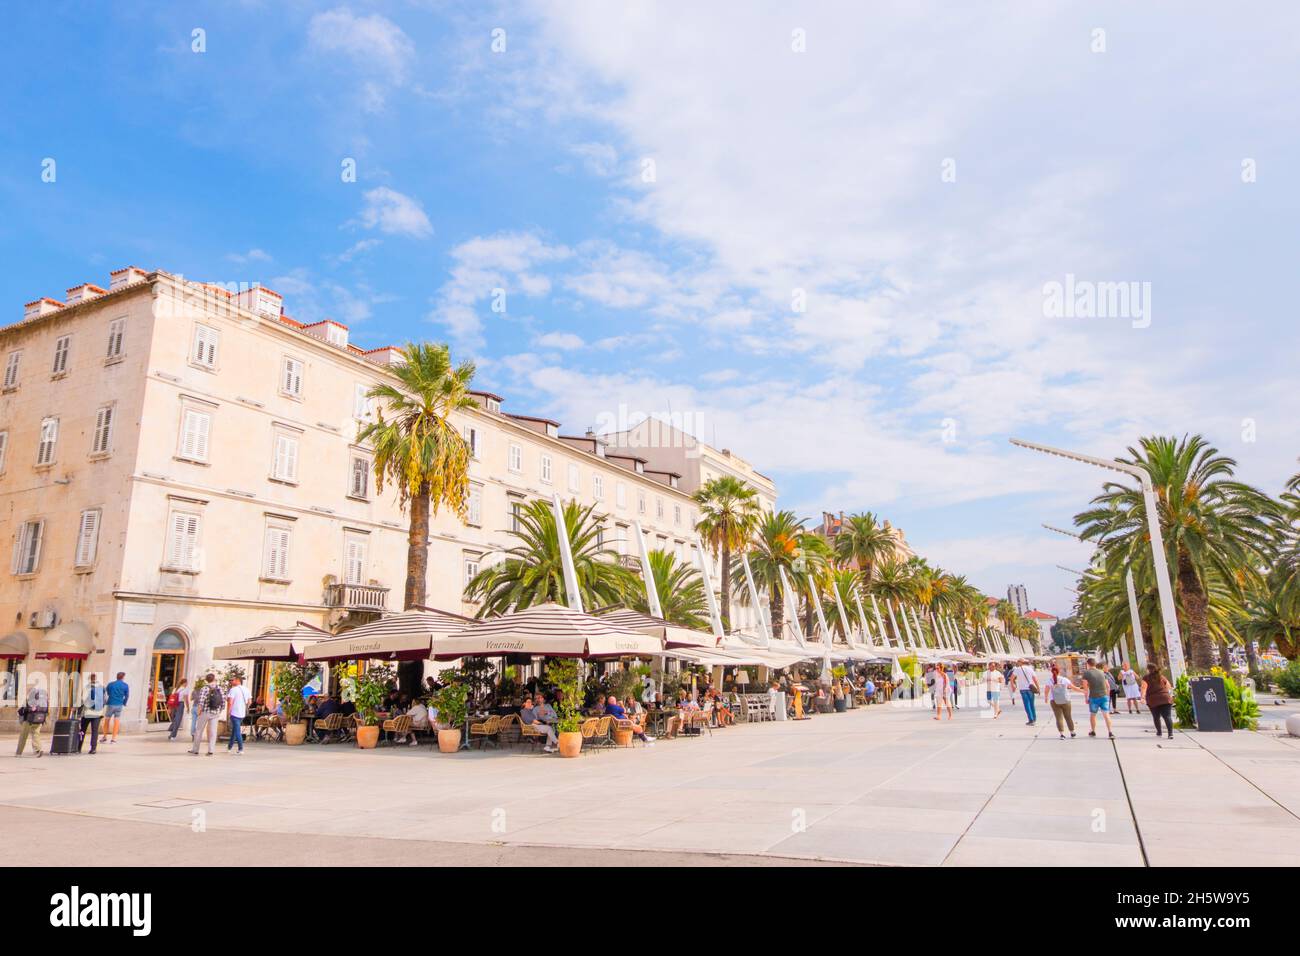 Riva, seaside promenade in the center, Split, Croatia Stock Photo